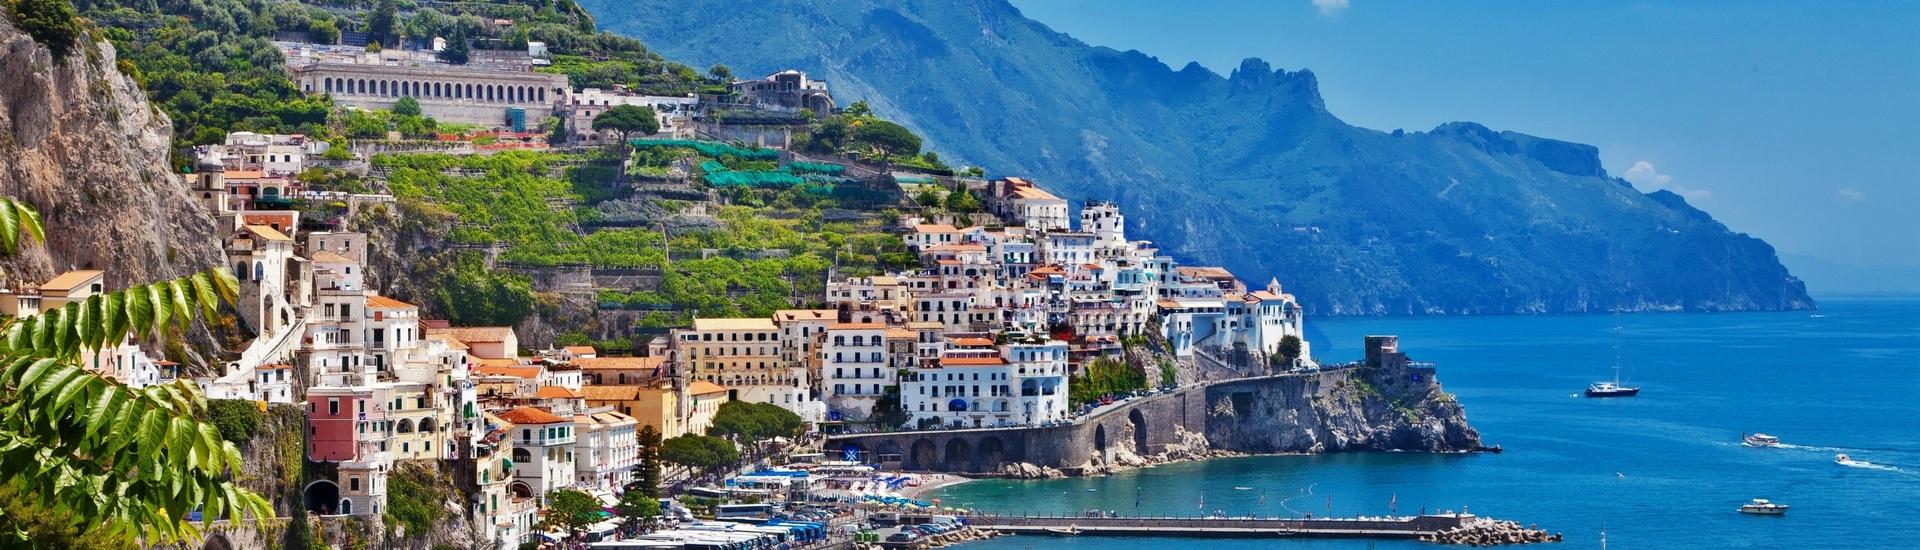 Amalfi - wielki błękit